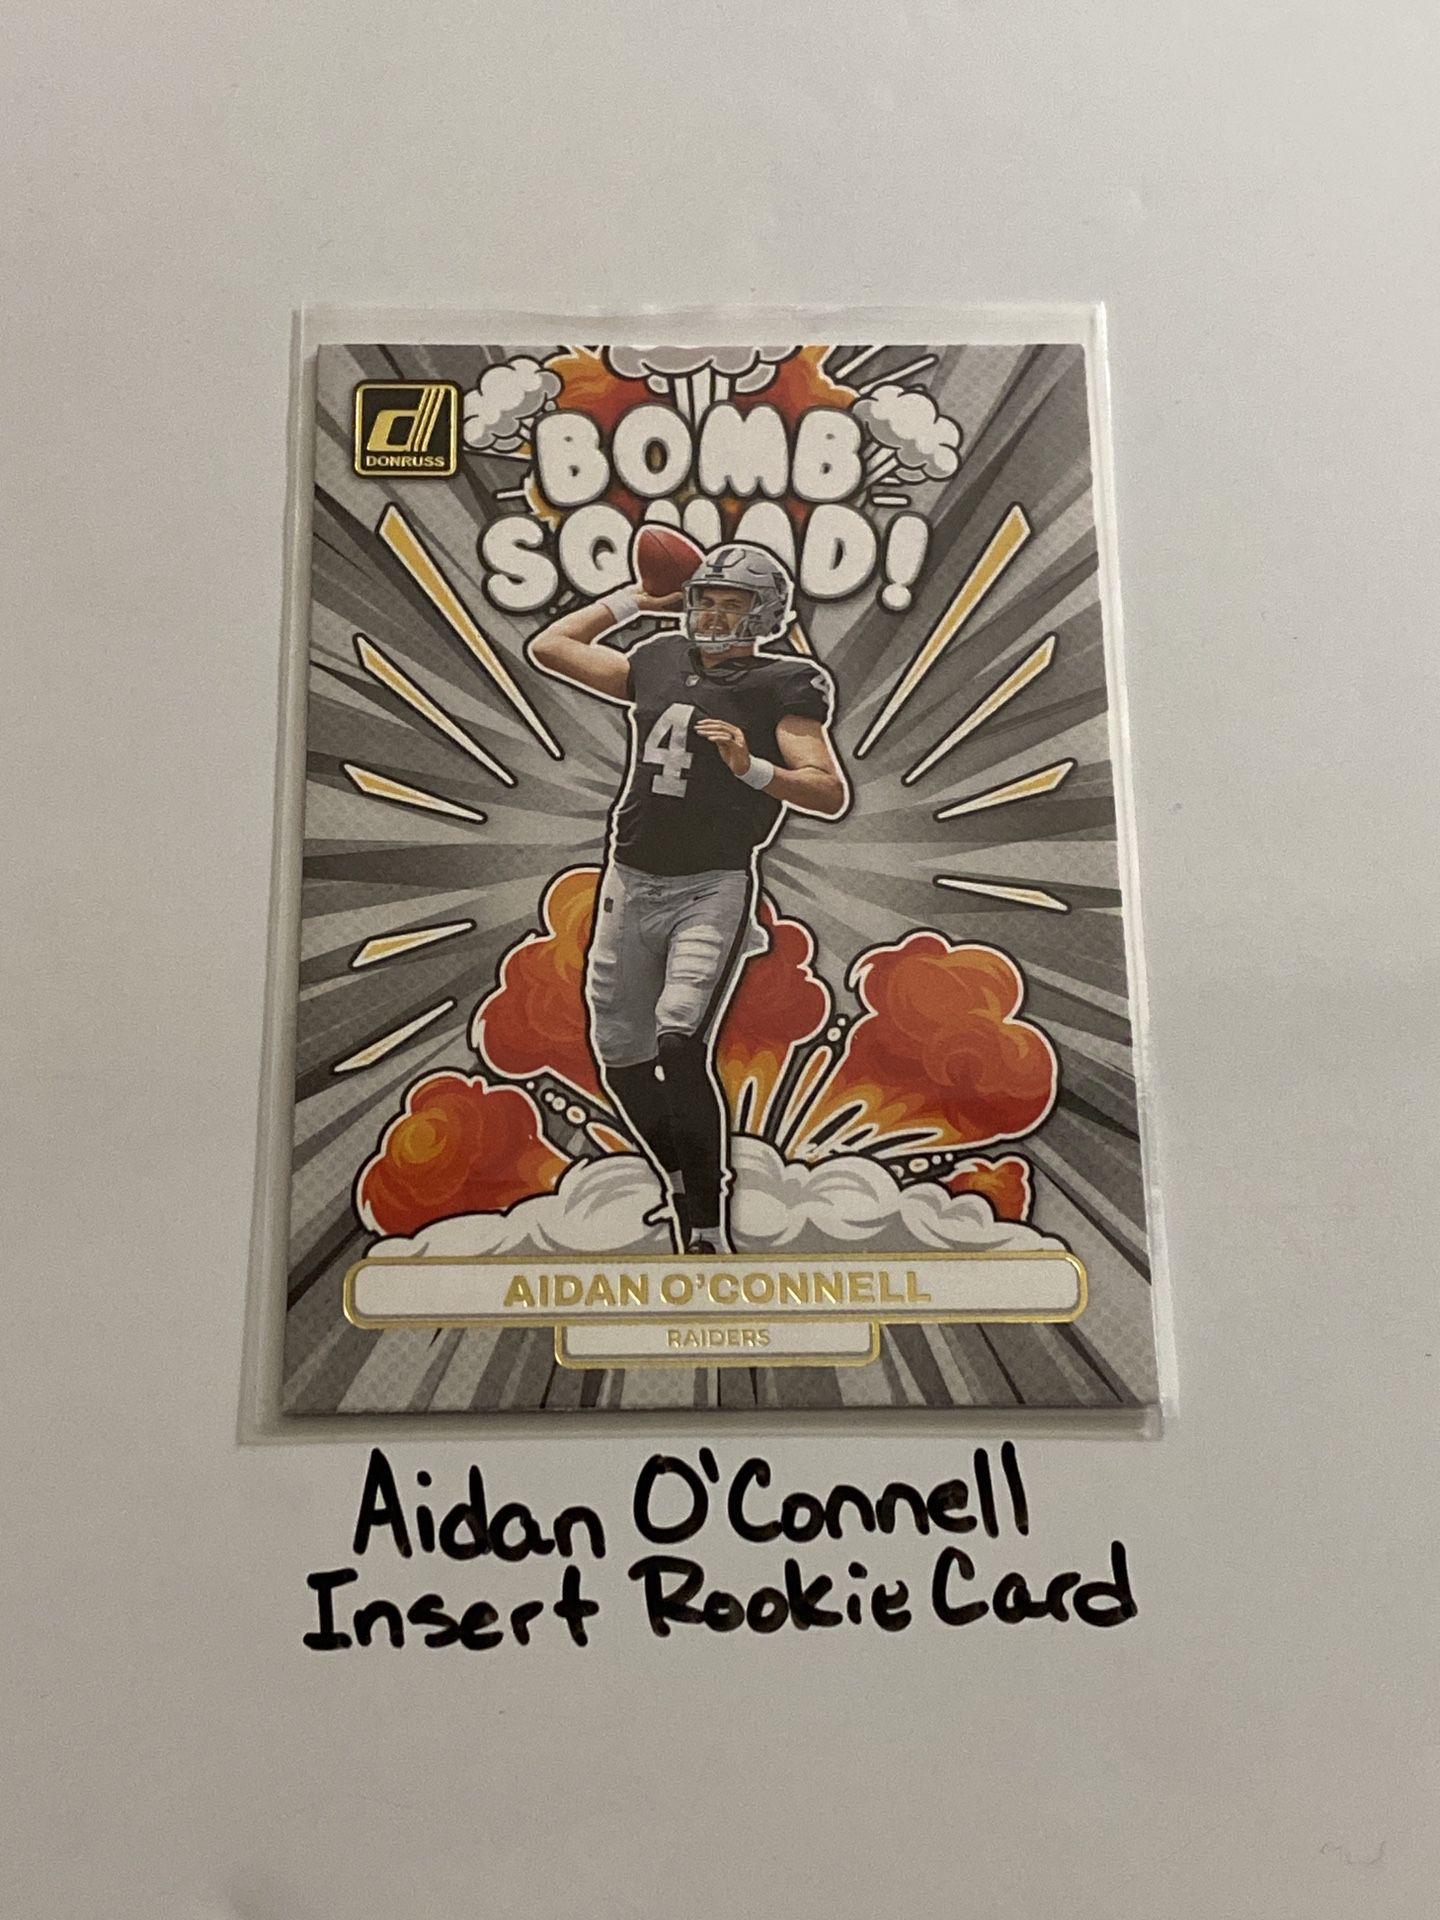 Aidan O’Connell Las Vegas Raiders QB Donruss Short Print Insert Rookie Card. 